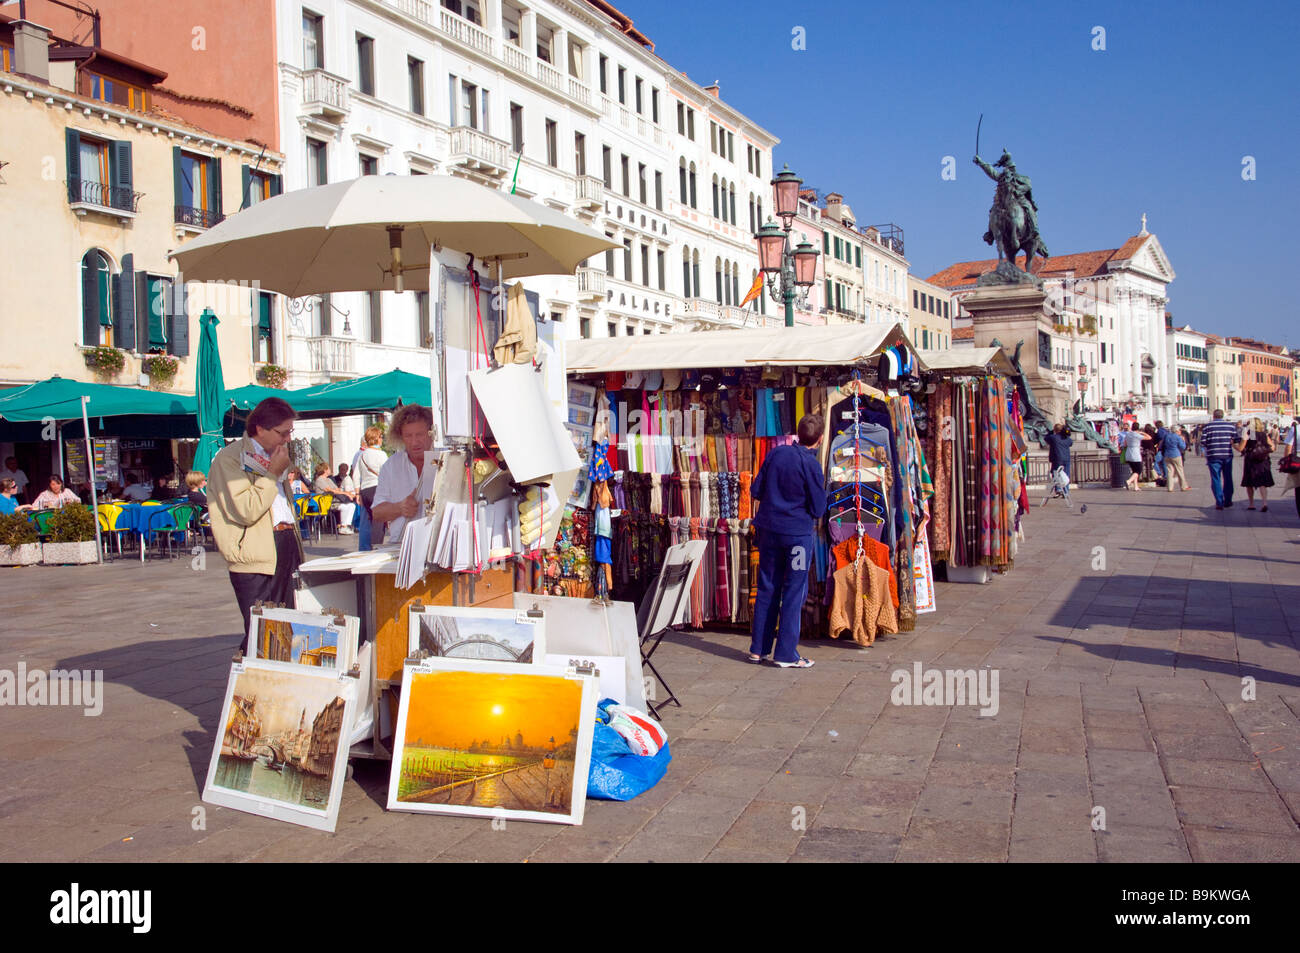 Kiosques et boutiques de souvenirs le long du front de mer à Venise Italie Banque D'Images